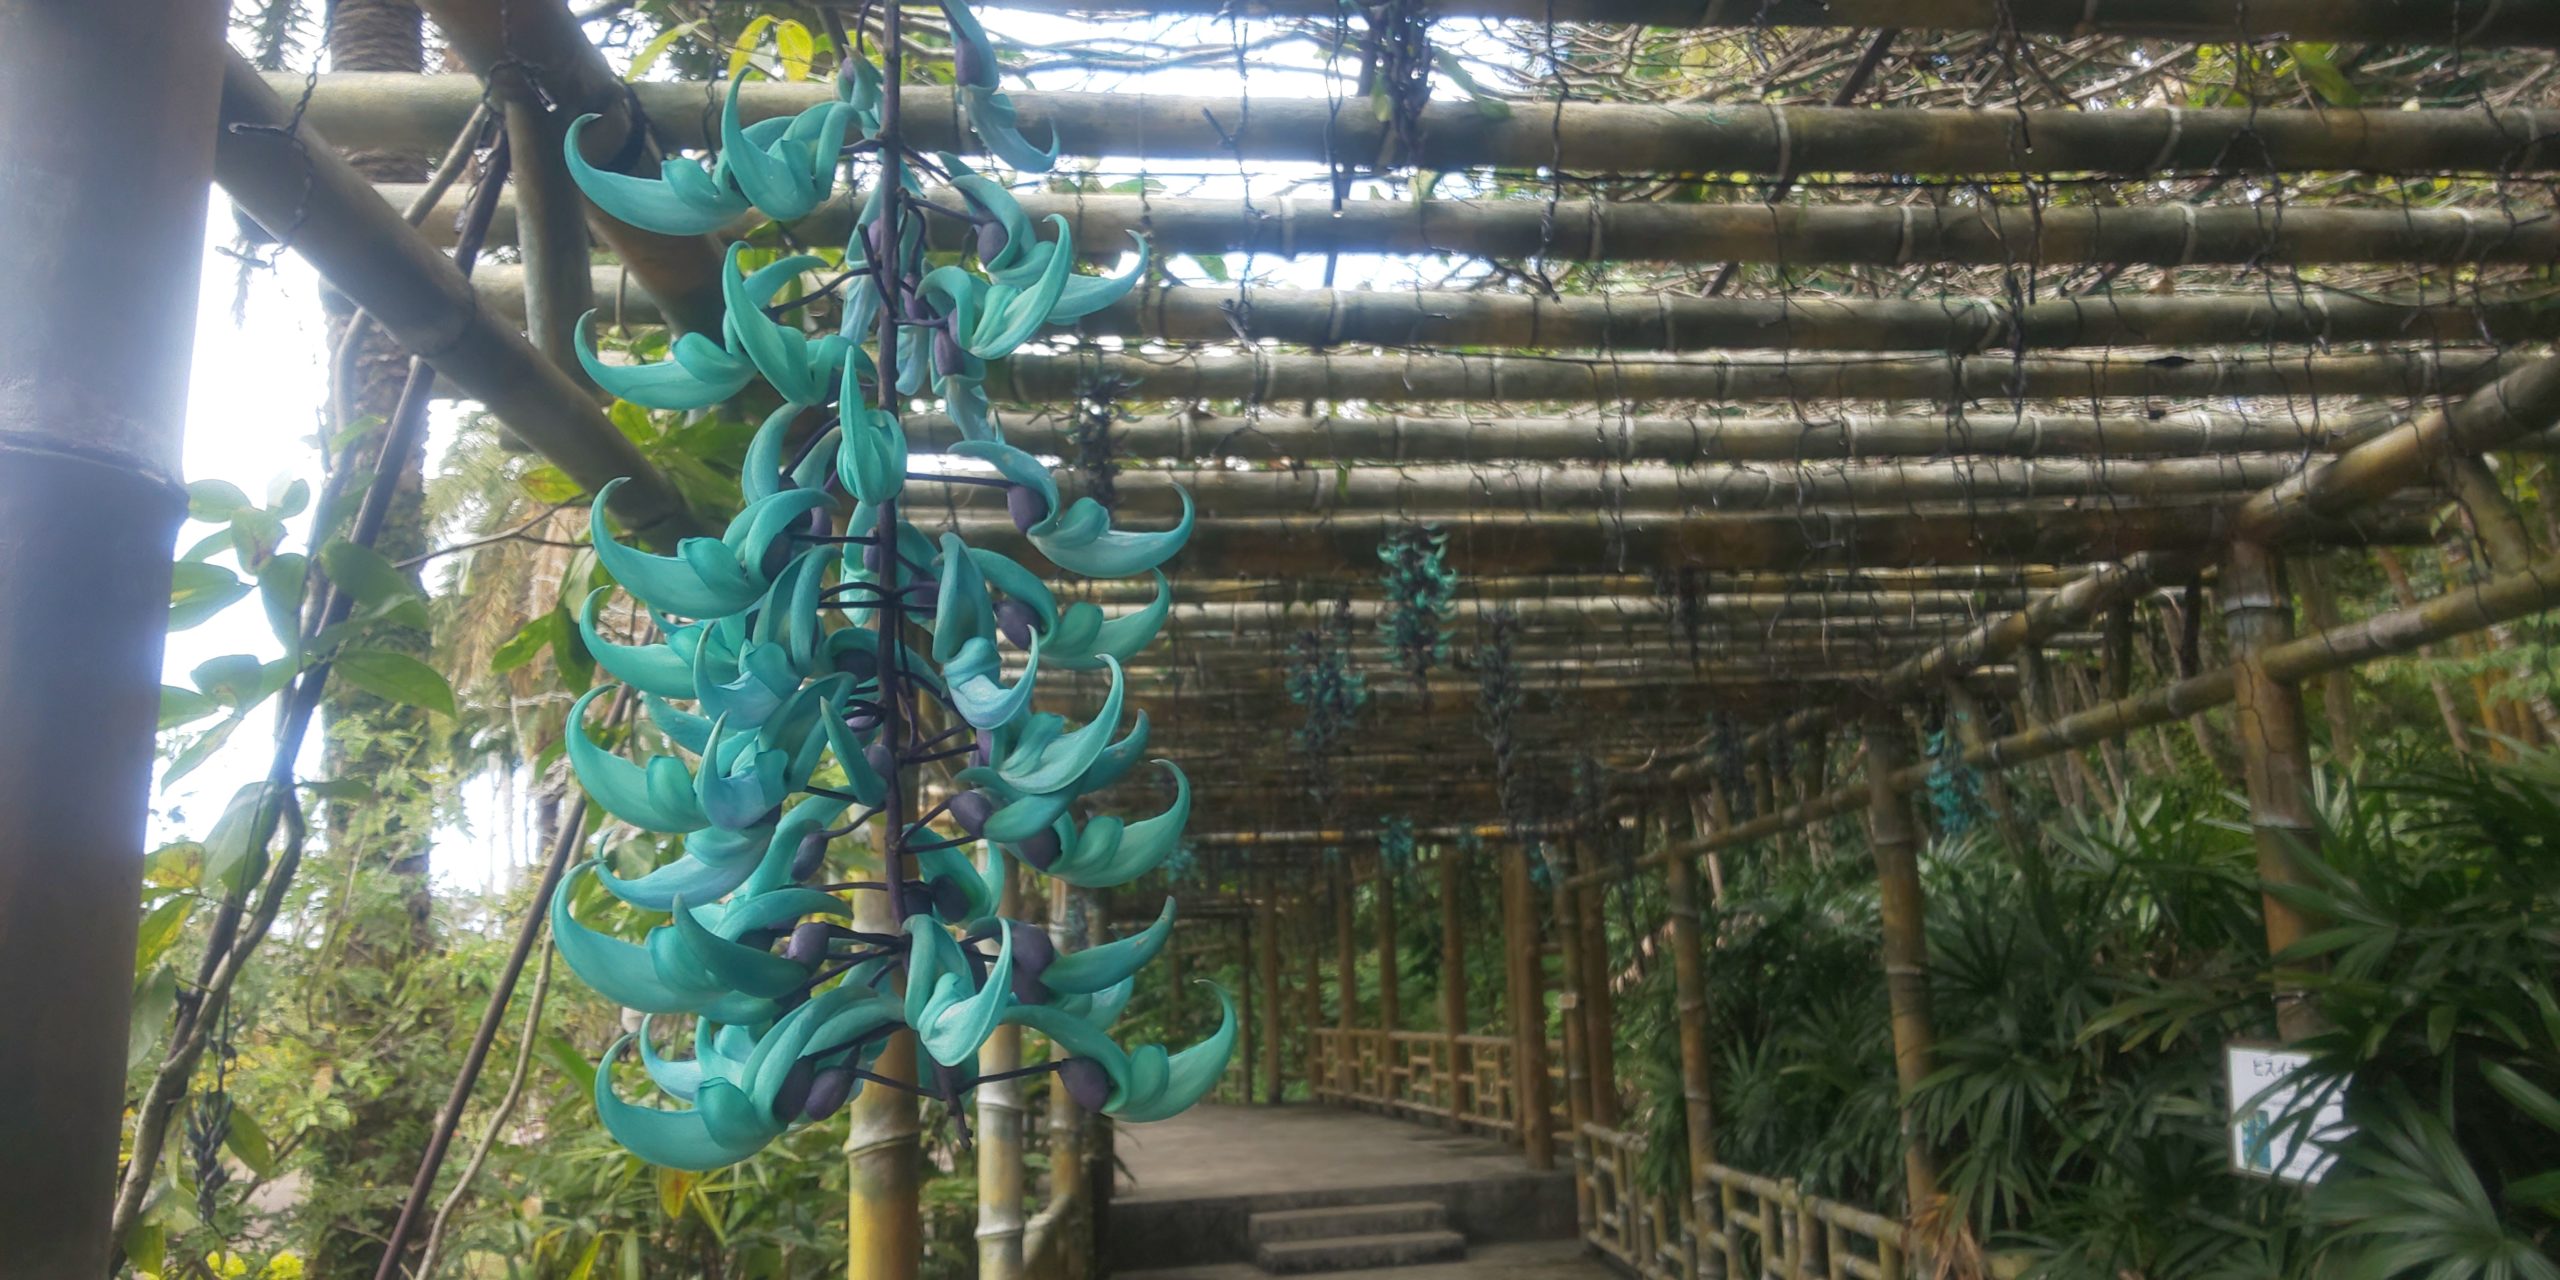 沖縄を旅する 東南植物楽園は恋愛成就のパワースポット 神秘の花 ヒスイカズラ が咲く 旅行記その3 観光名人の旅行記ブログ